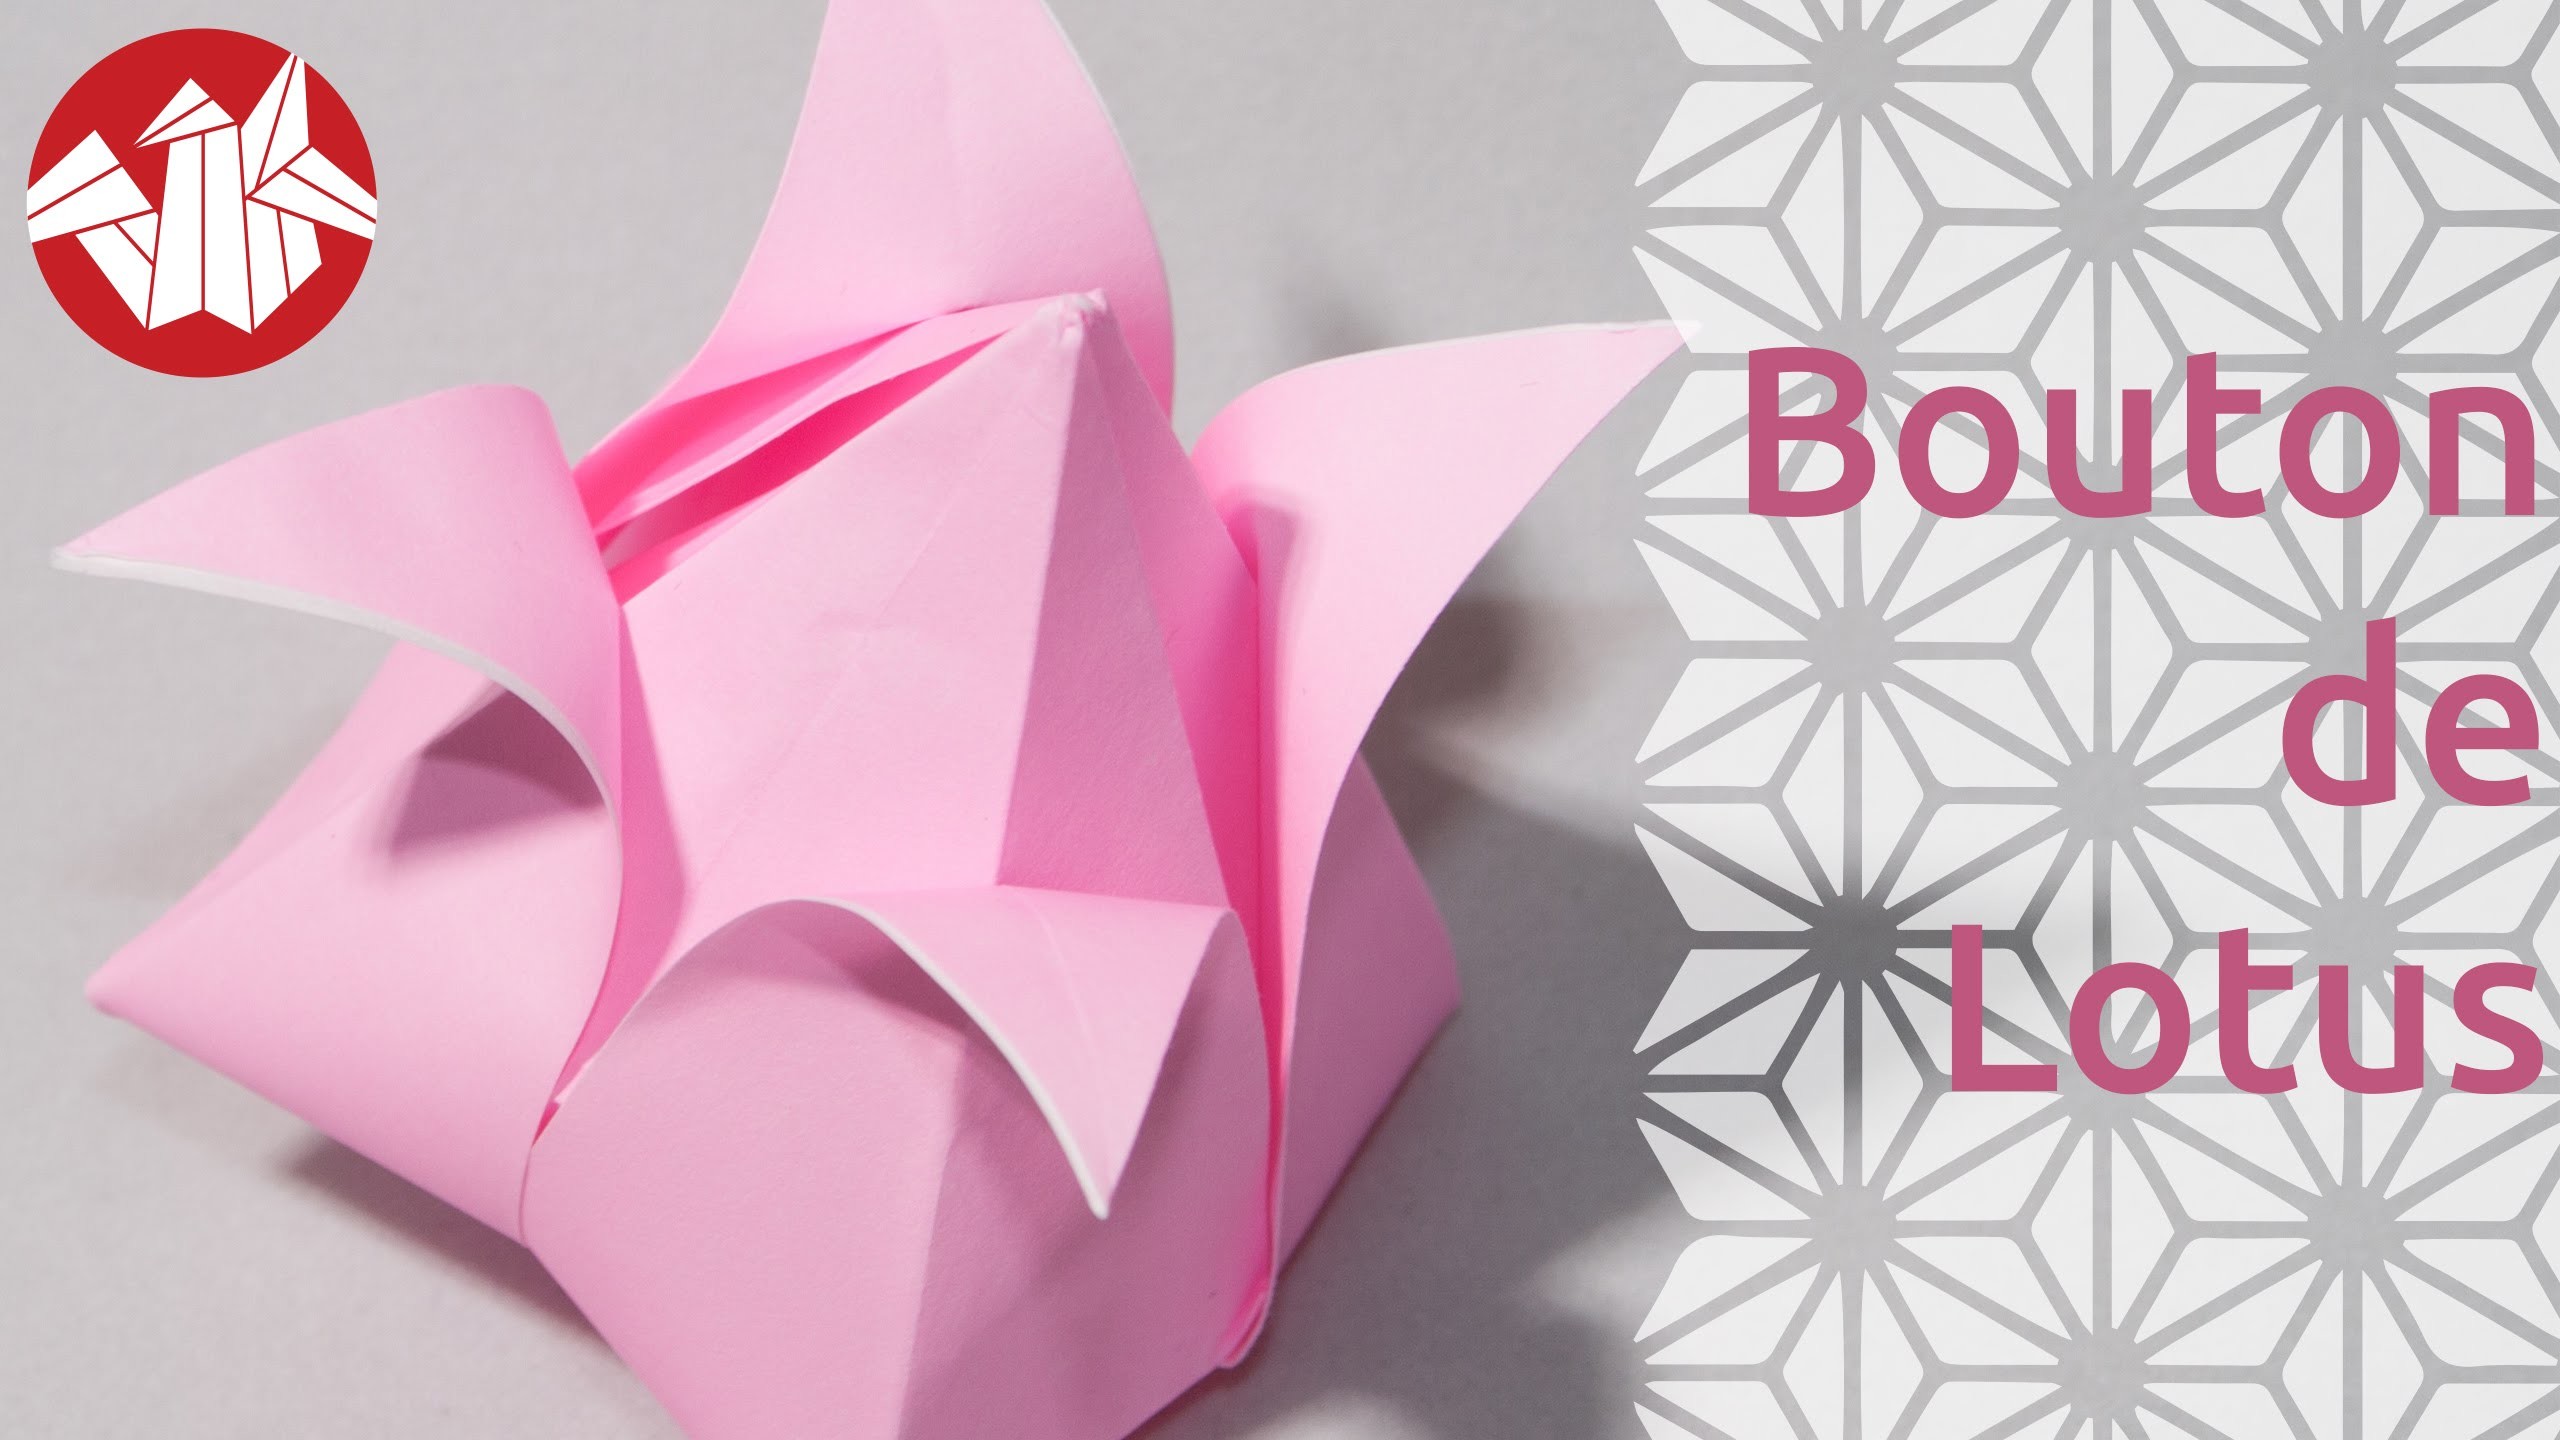 Origami - Bouton de lotus - Lotus Bud [Senbazuru]